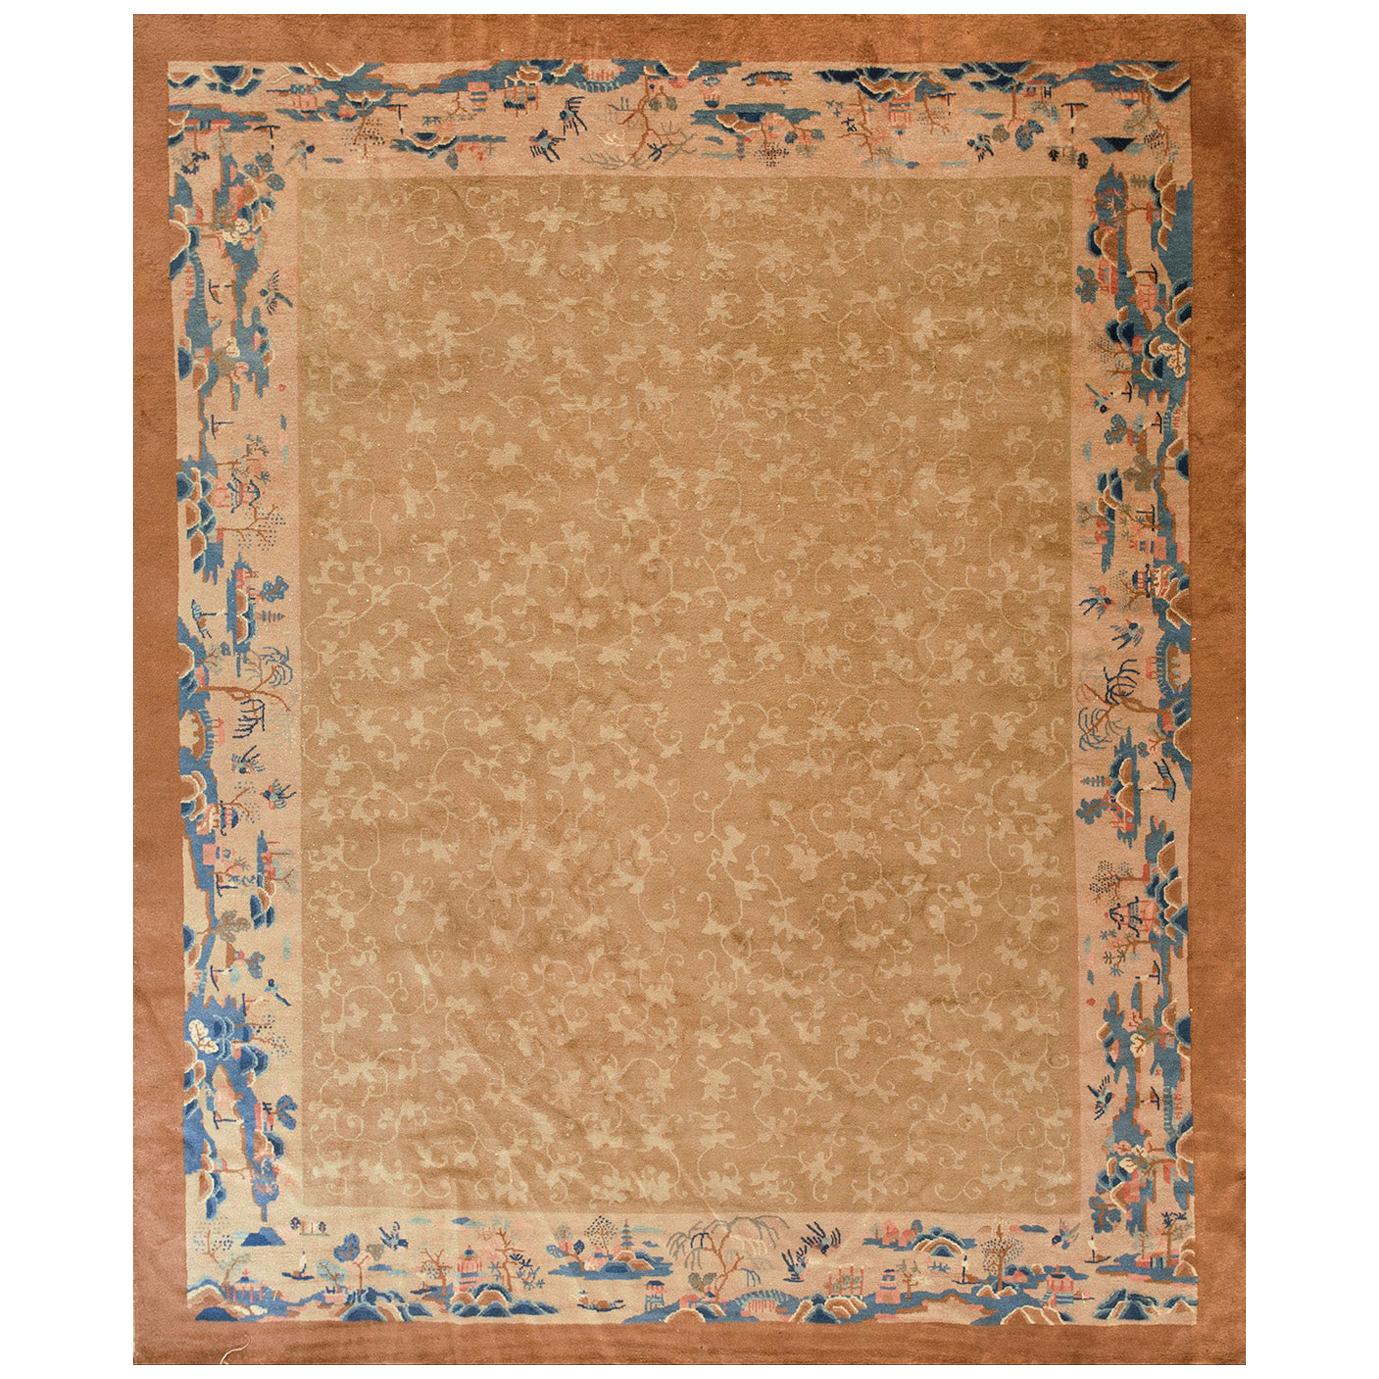 Chinesischer Peking-Teppich des frühen 20. Jahrhunderts ( 8' x 9'10" - 245 x 300)